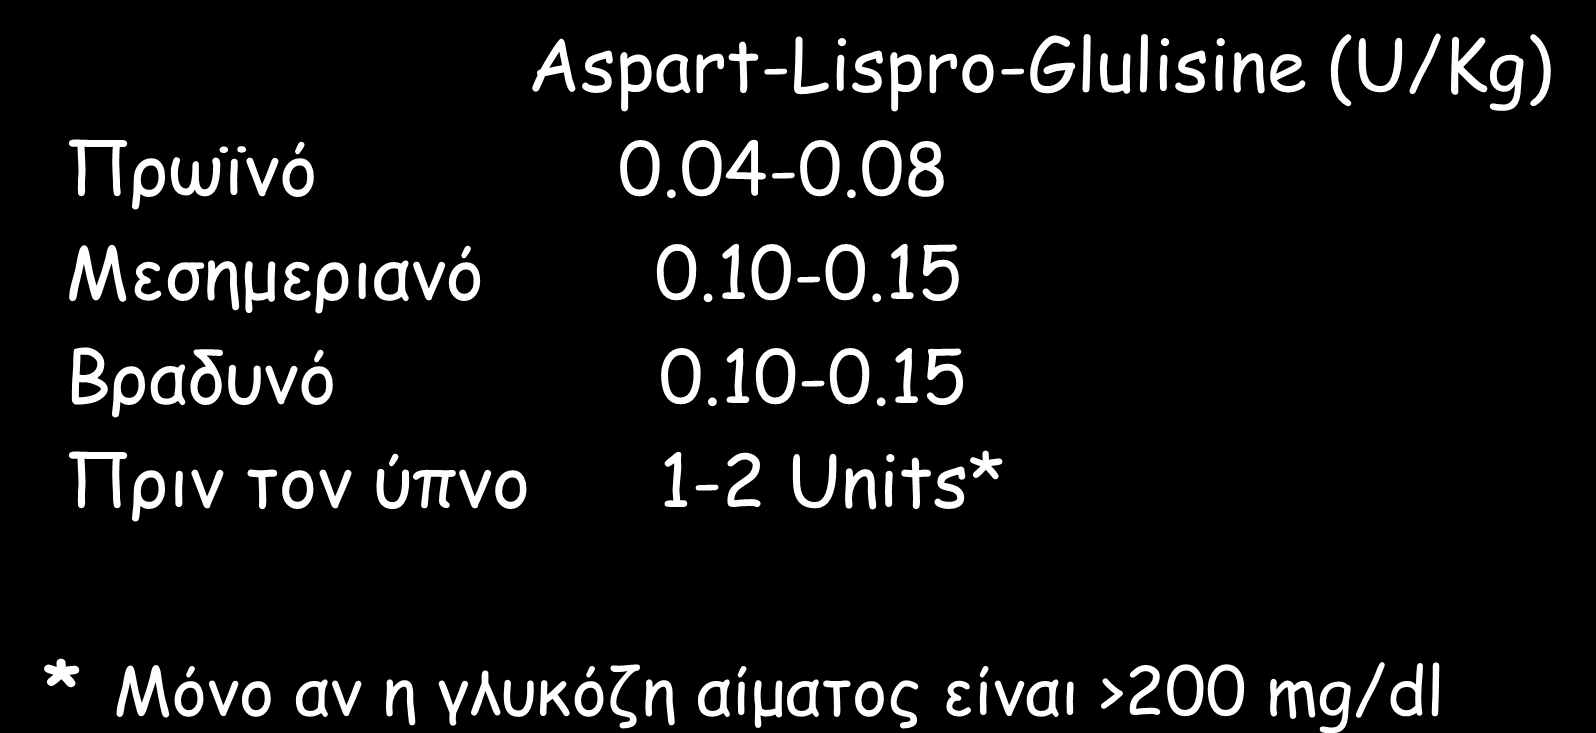 ΣΥΝΗΘΕΙΣ ΑΝΑΓΚΕΣ ΣΕ ΑΝΑΛΟΓΑ ΙΝΣΟΥΛΙΝΗΣ ΤΑΦΕΙΑΣ ΔΡΑΣΗΣ Aspart-Lispro-Glulisine (U/Kg) Πρωϊμό 0.04-0.08 Μεζημεριαμό 0.10-0.